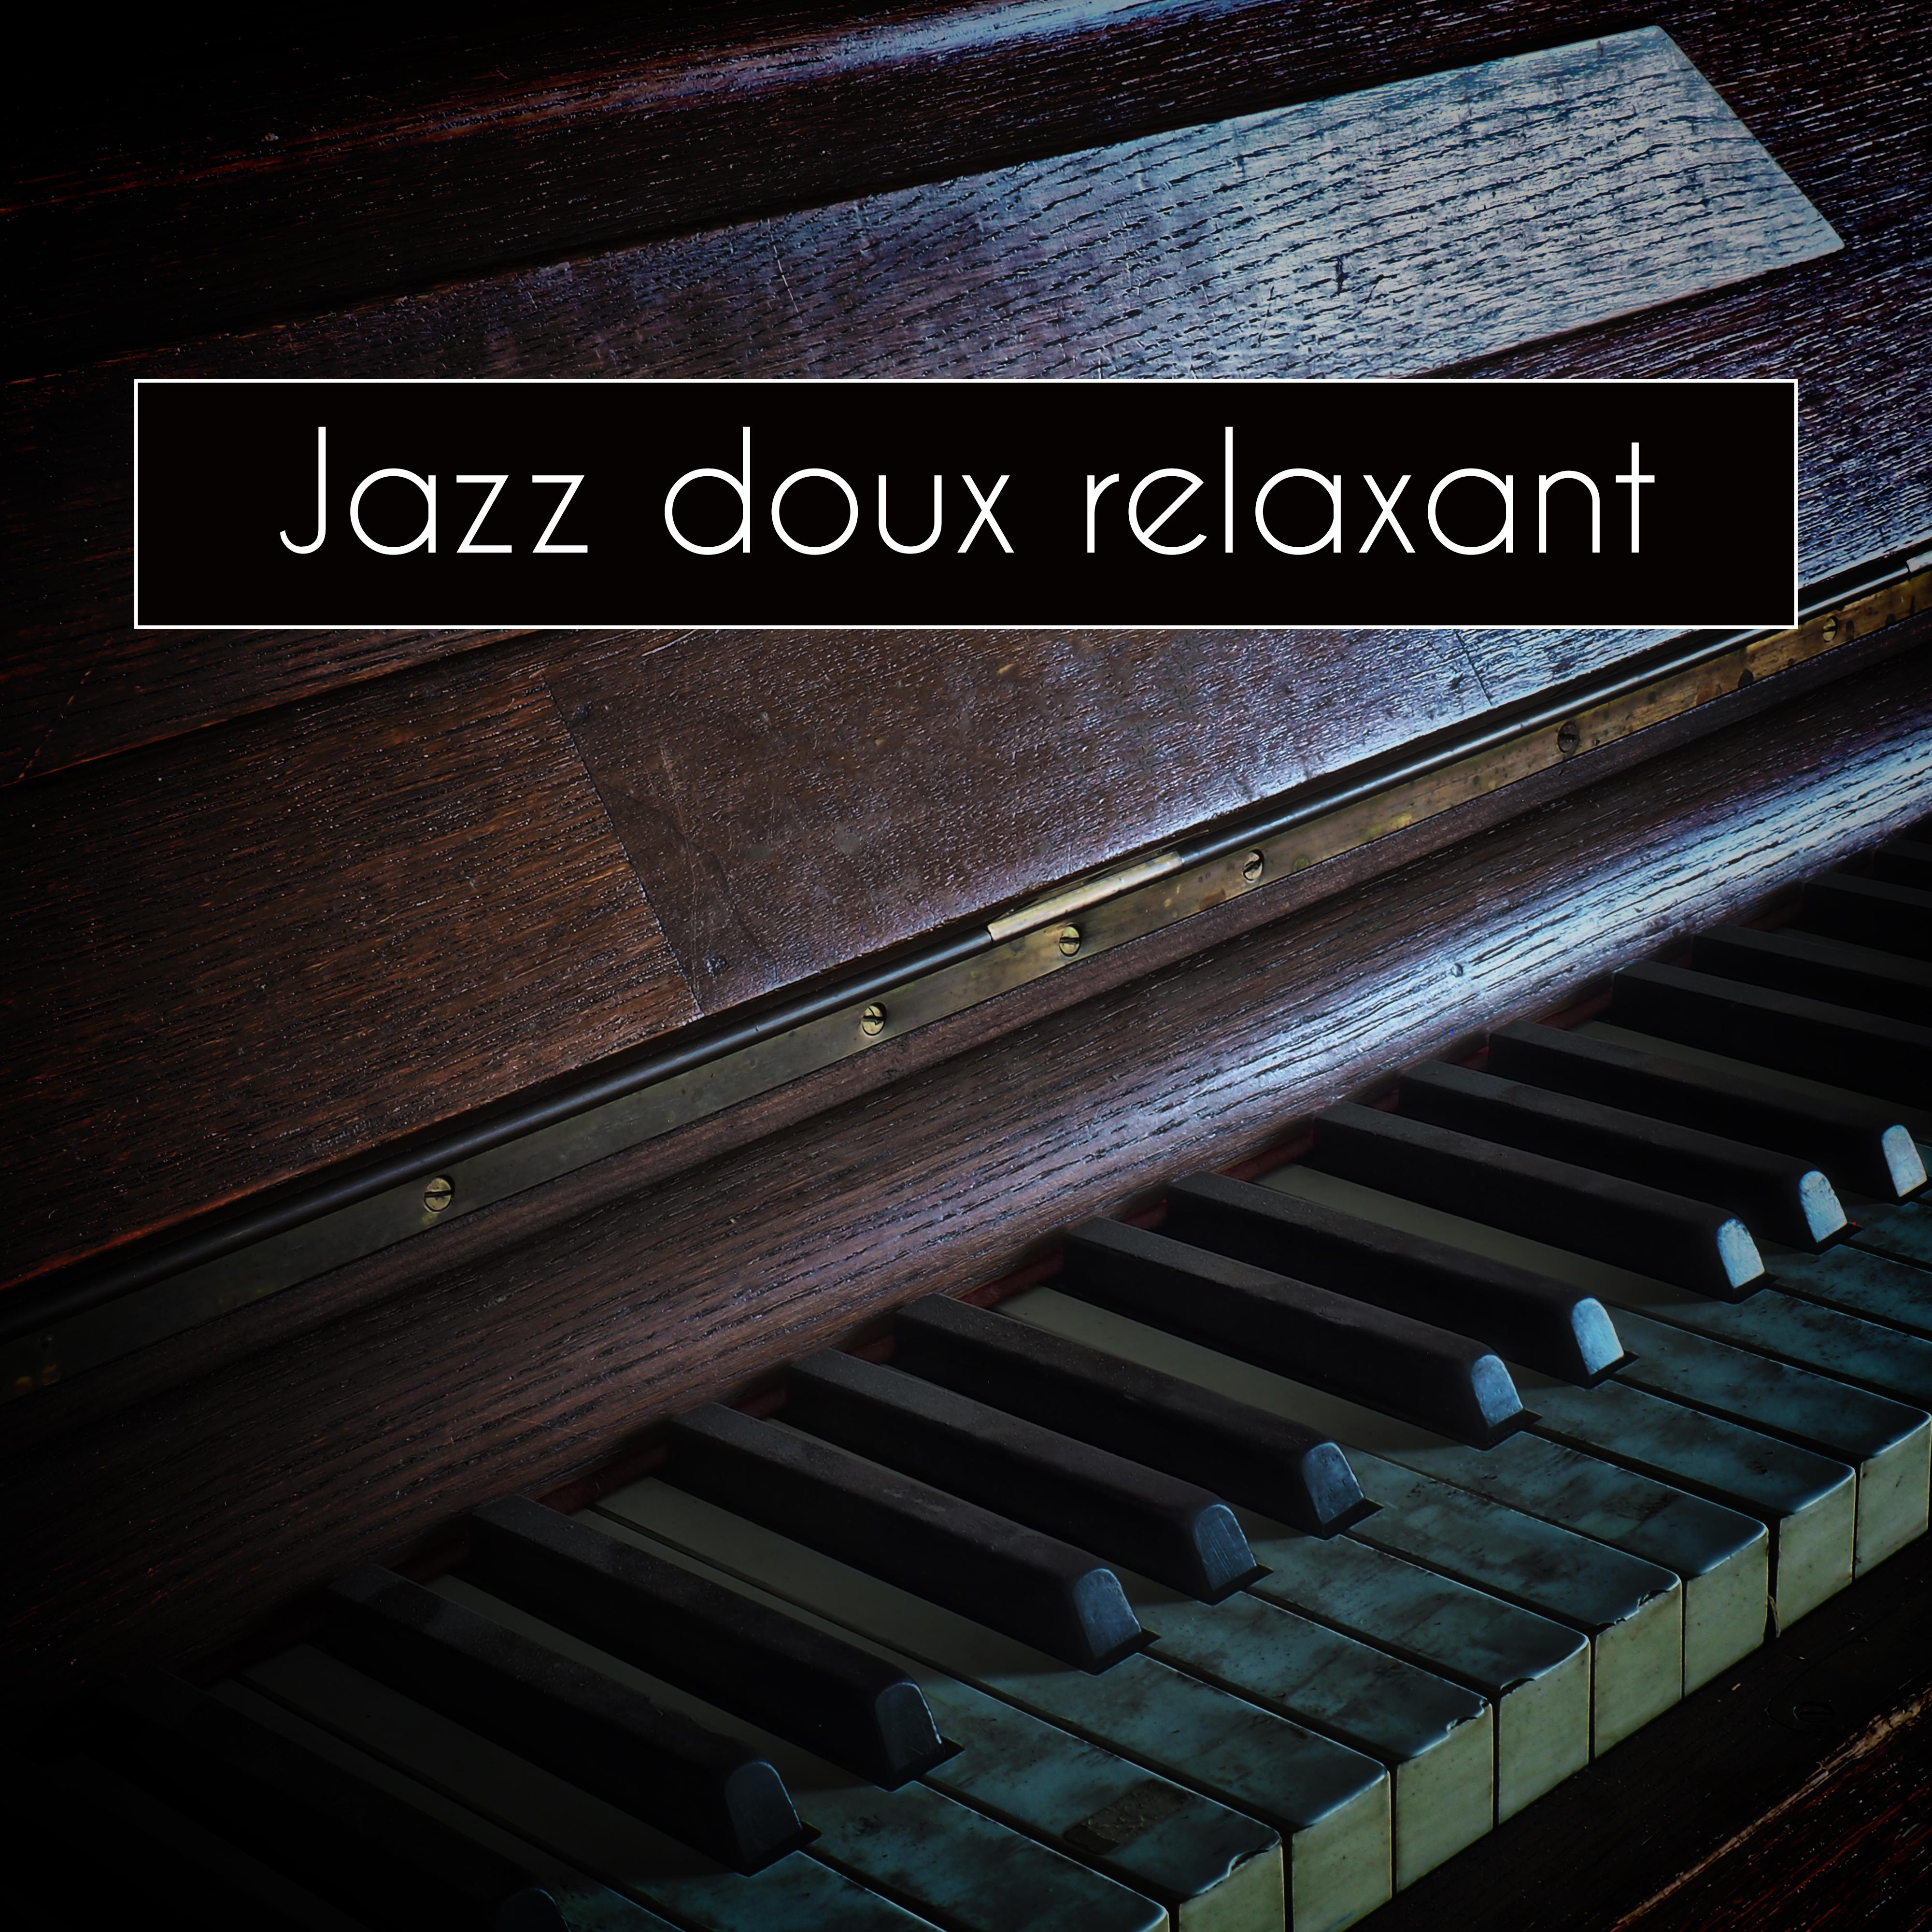 Jazz doux relaxant